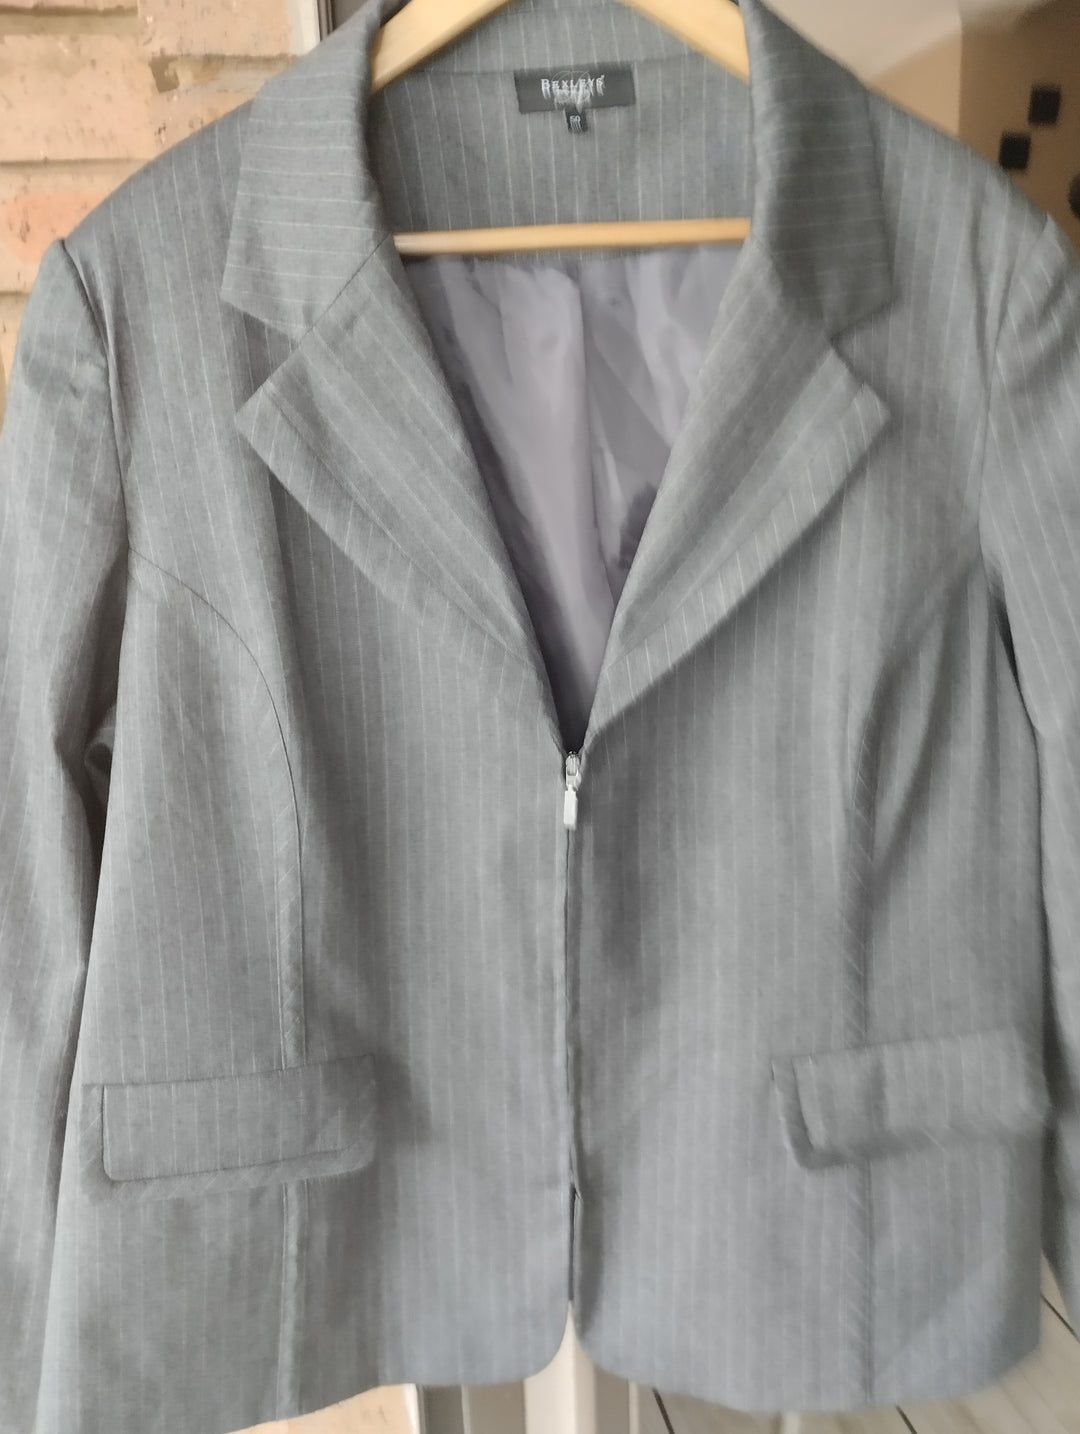 Grey formal jacket